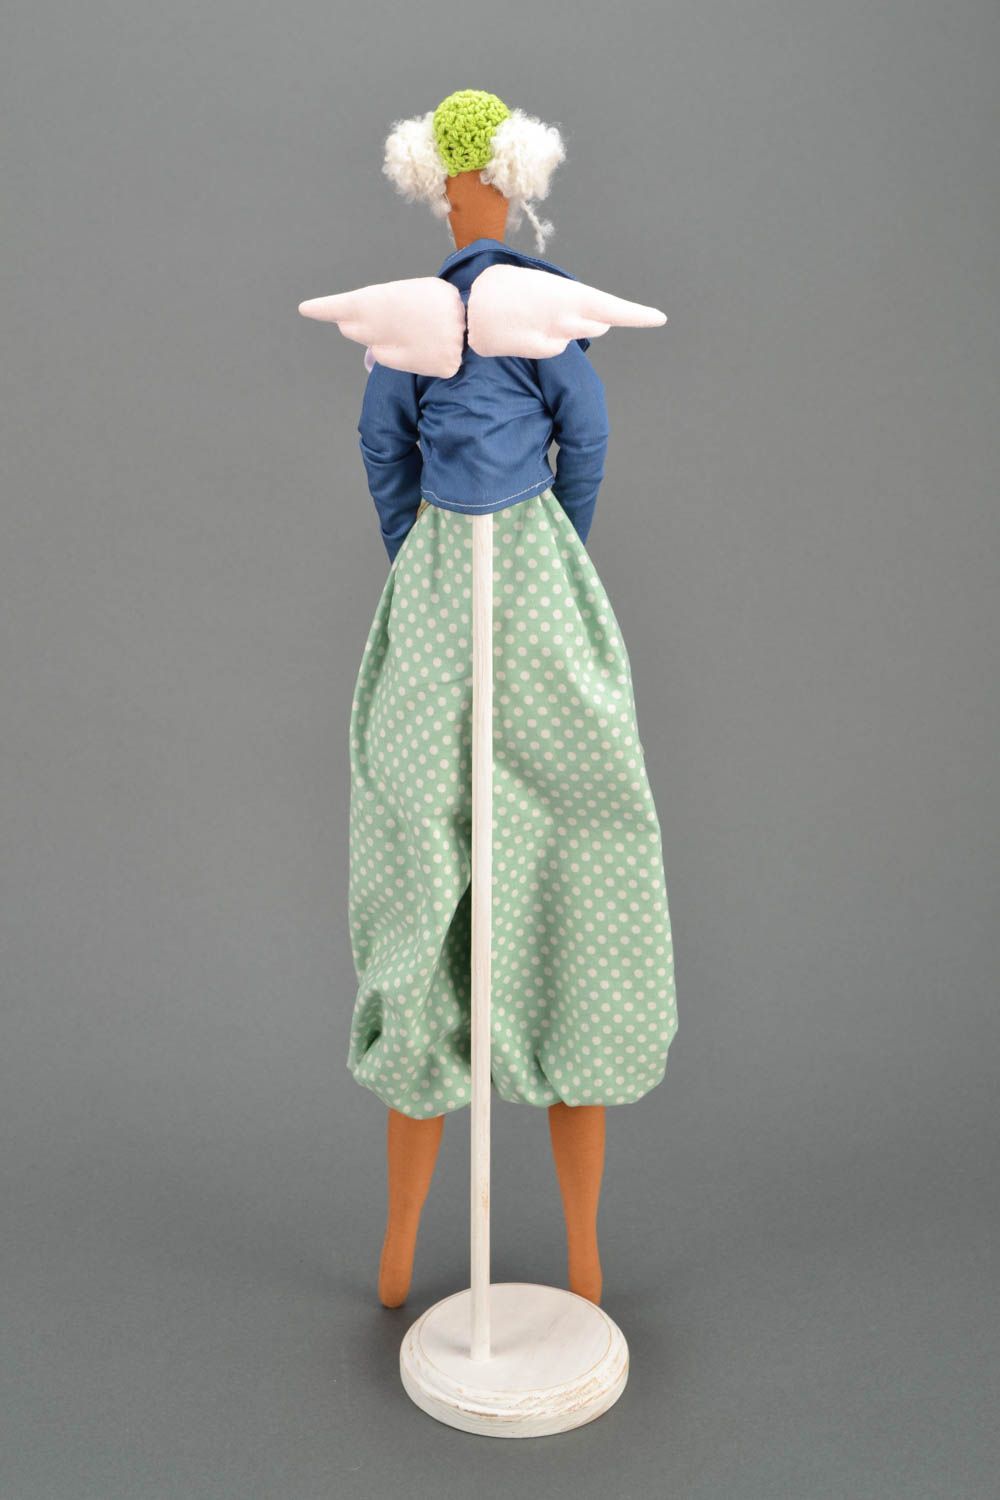 Handmade designer doll in dress photo 4